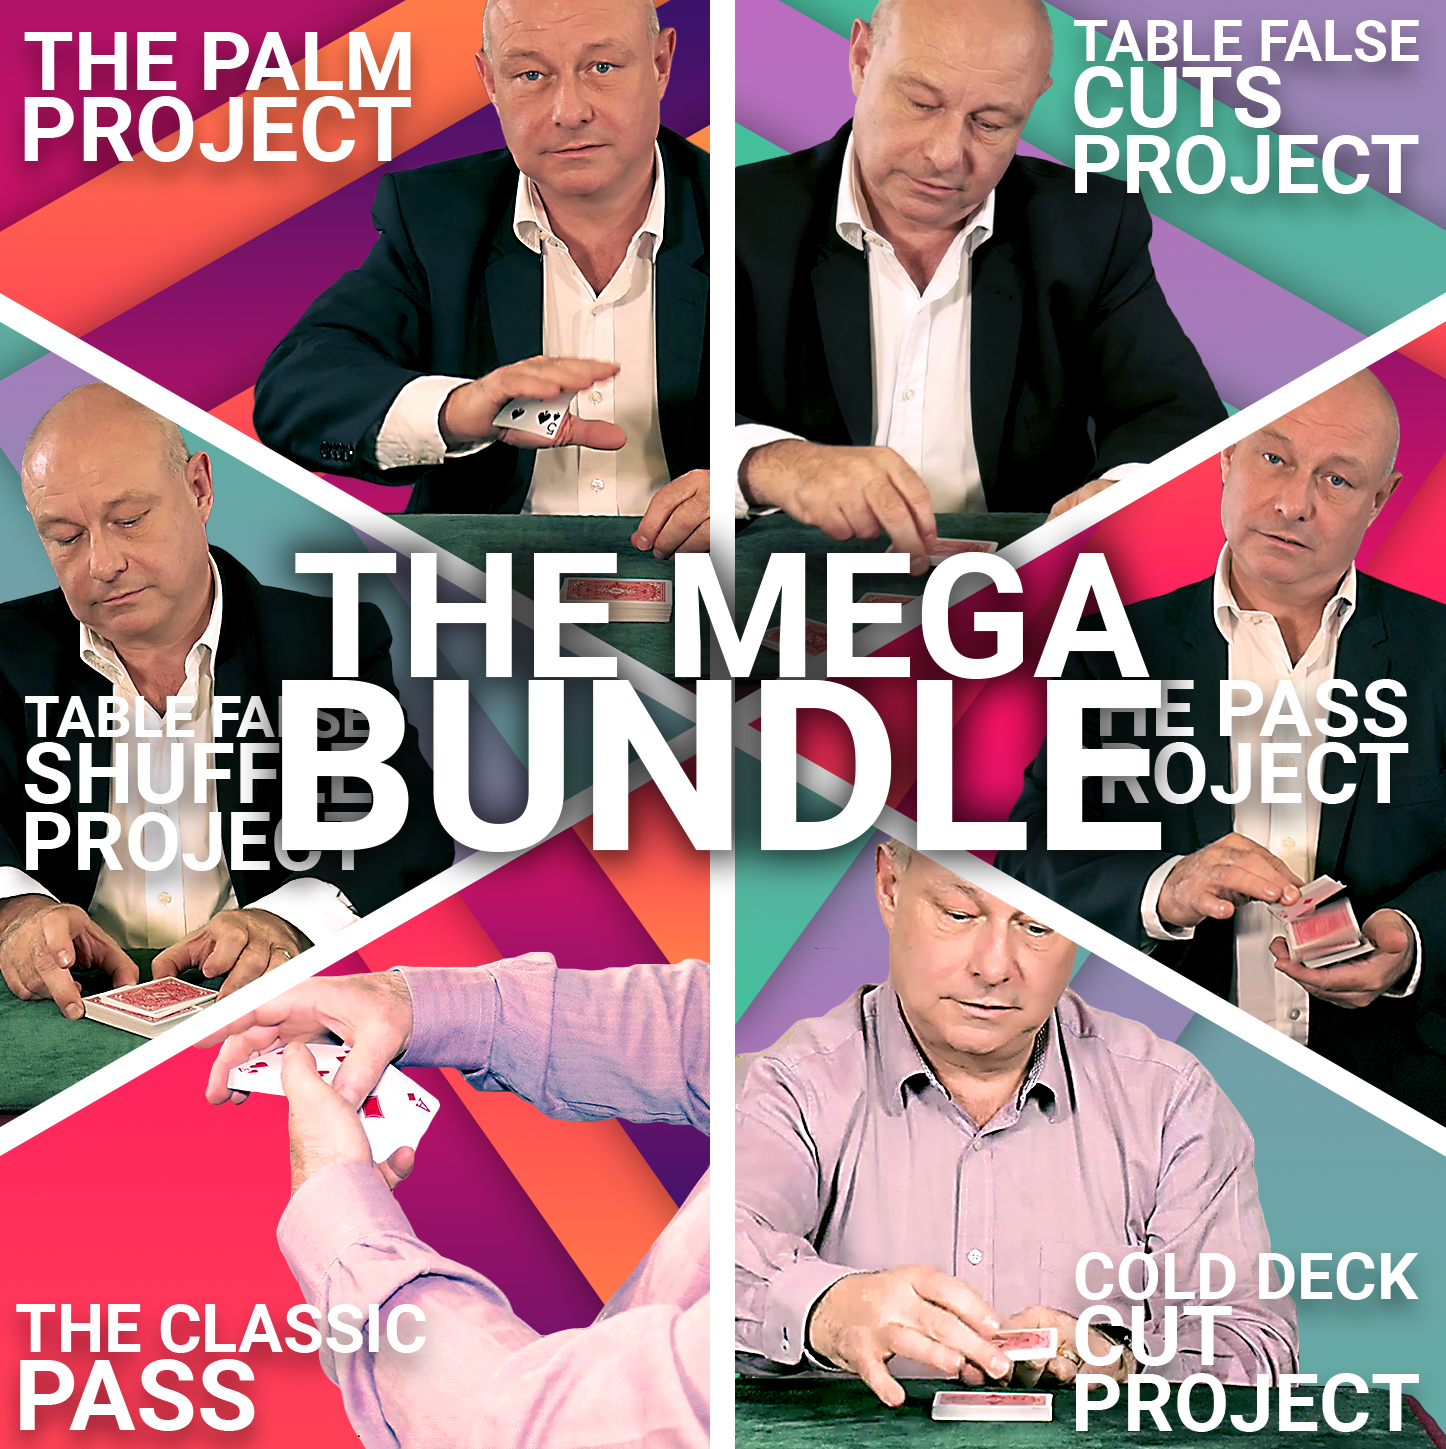 Eddie McColl - The Mega Bundle